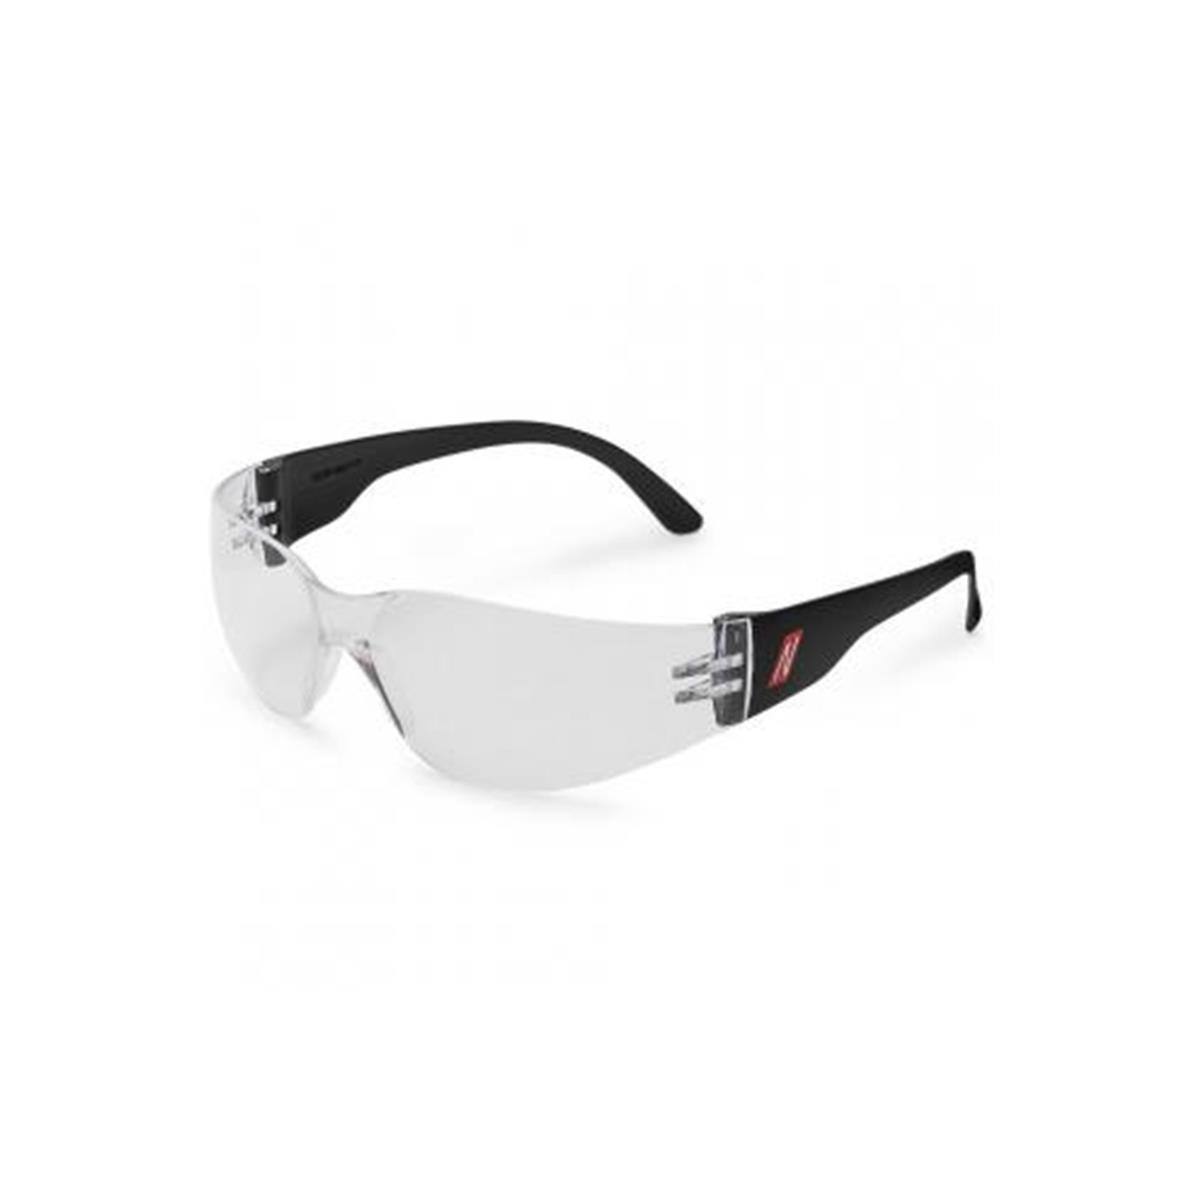 Nitras Allzweckschutzbrille Nitras Vision Protect Schutzbrille für Reinigung,  transparent, 3,39 €